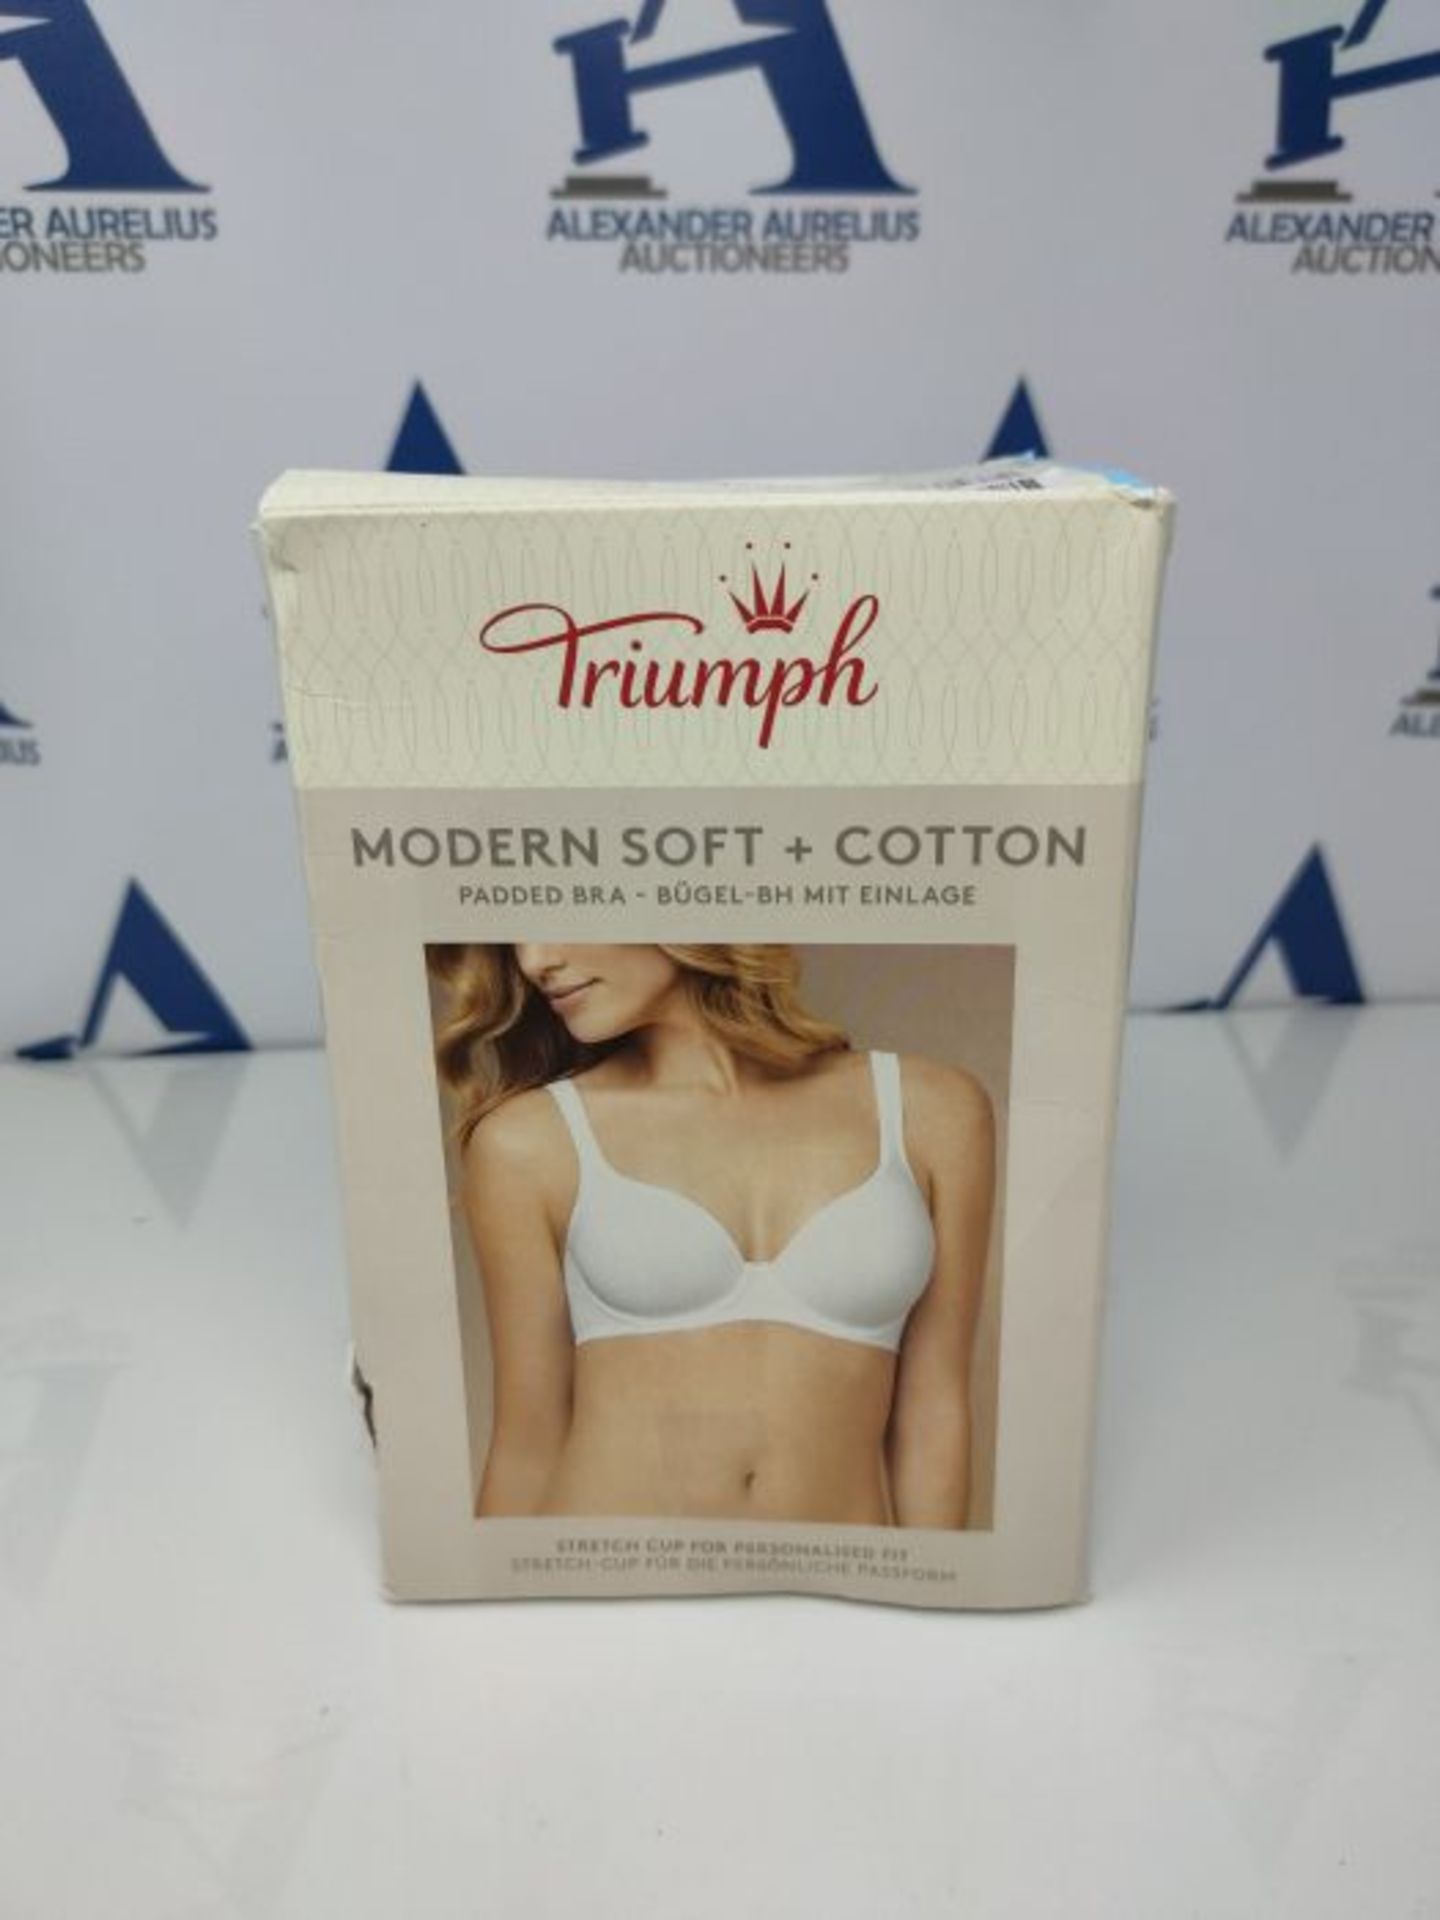 Triumph Women's contemporary Soft+Cotton WP Full Coverage Bra, Black, Size 32C - Image 2 of 3